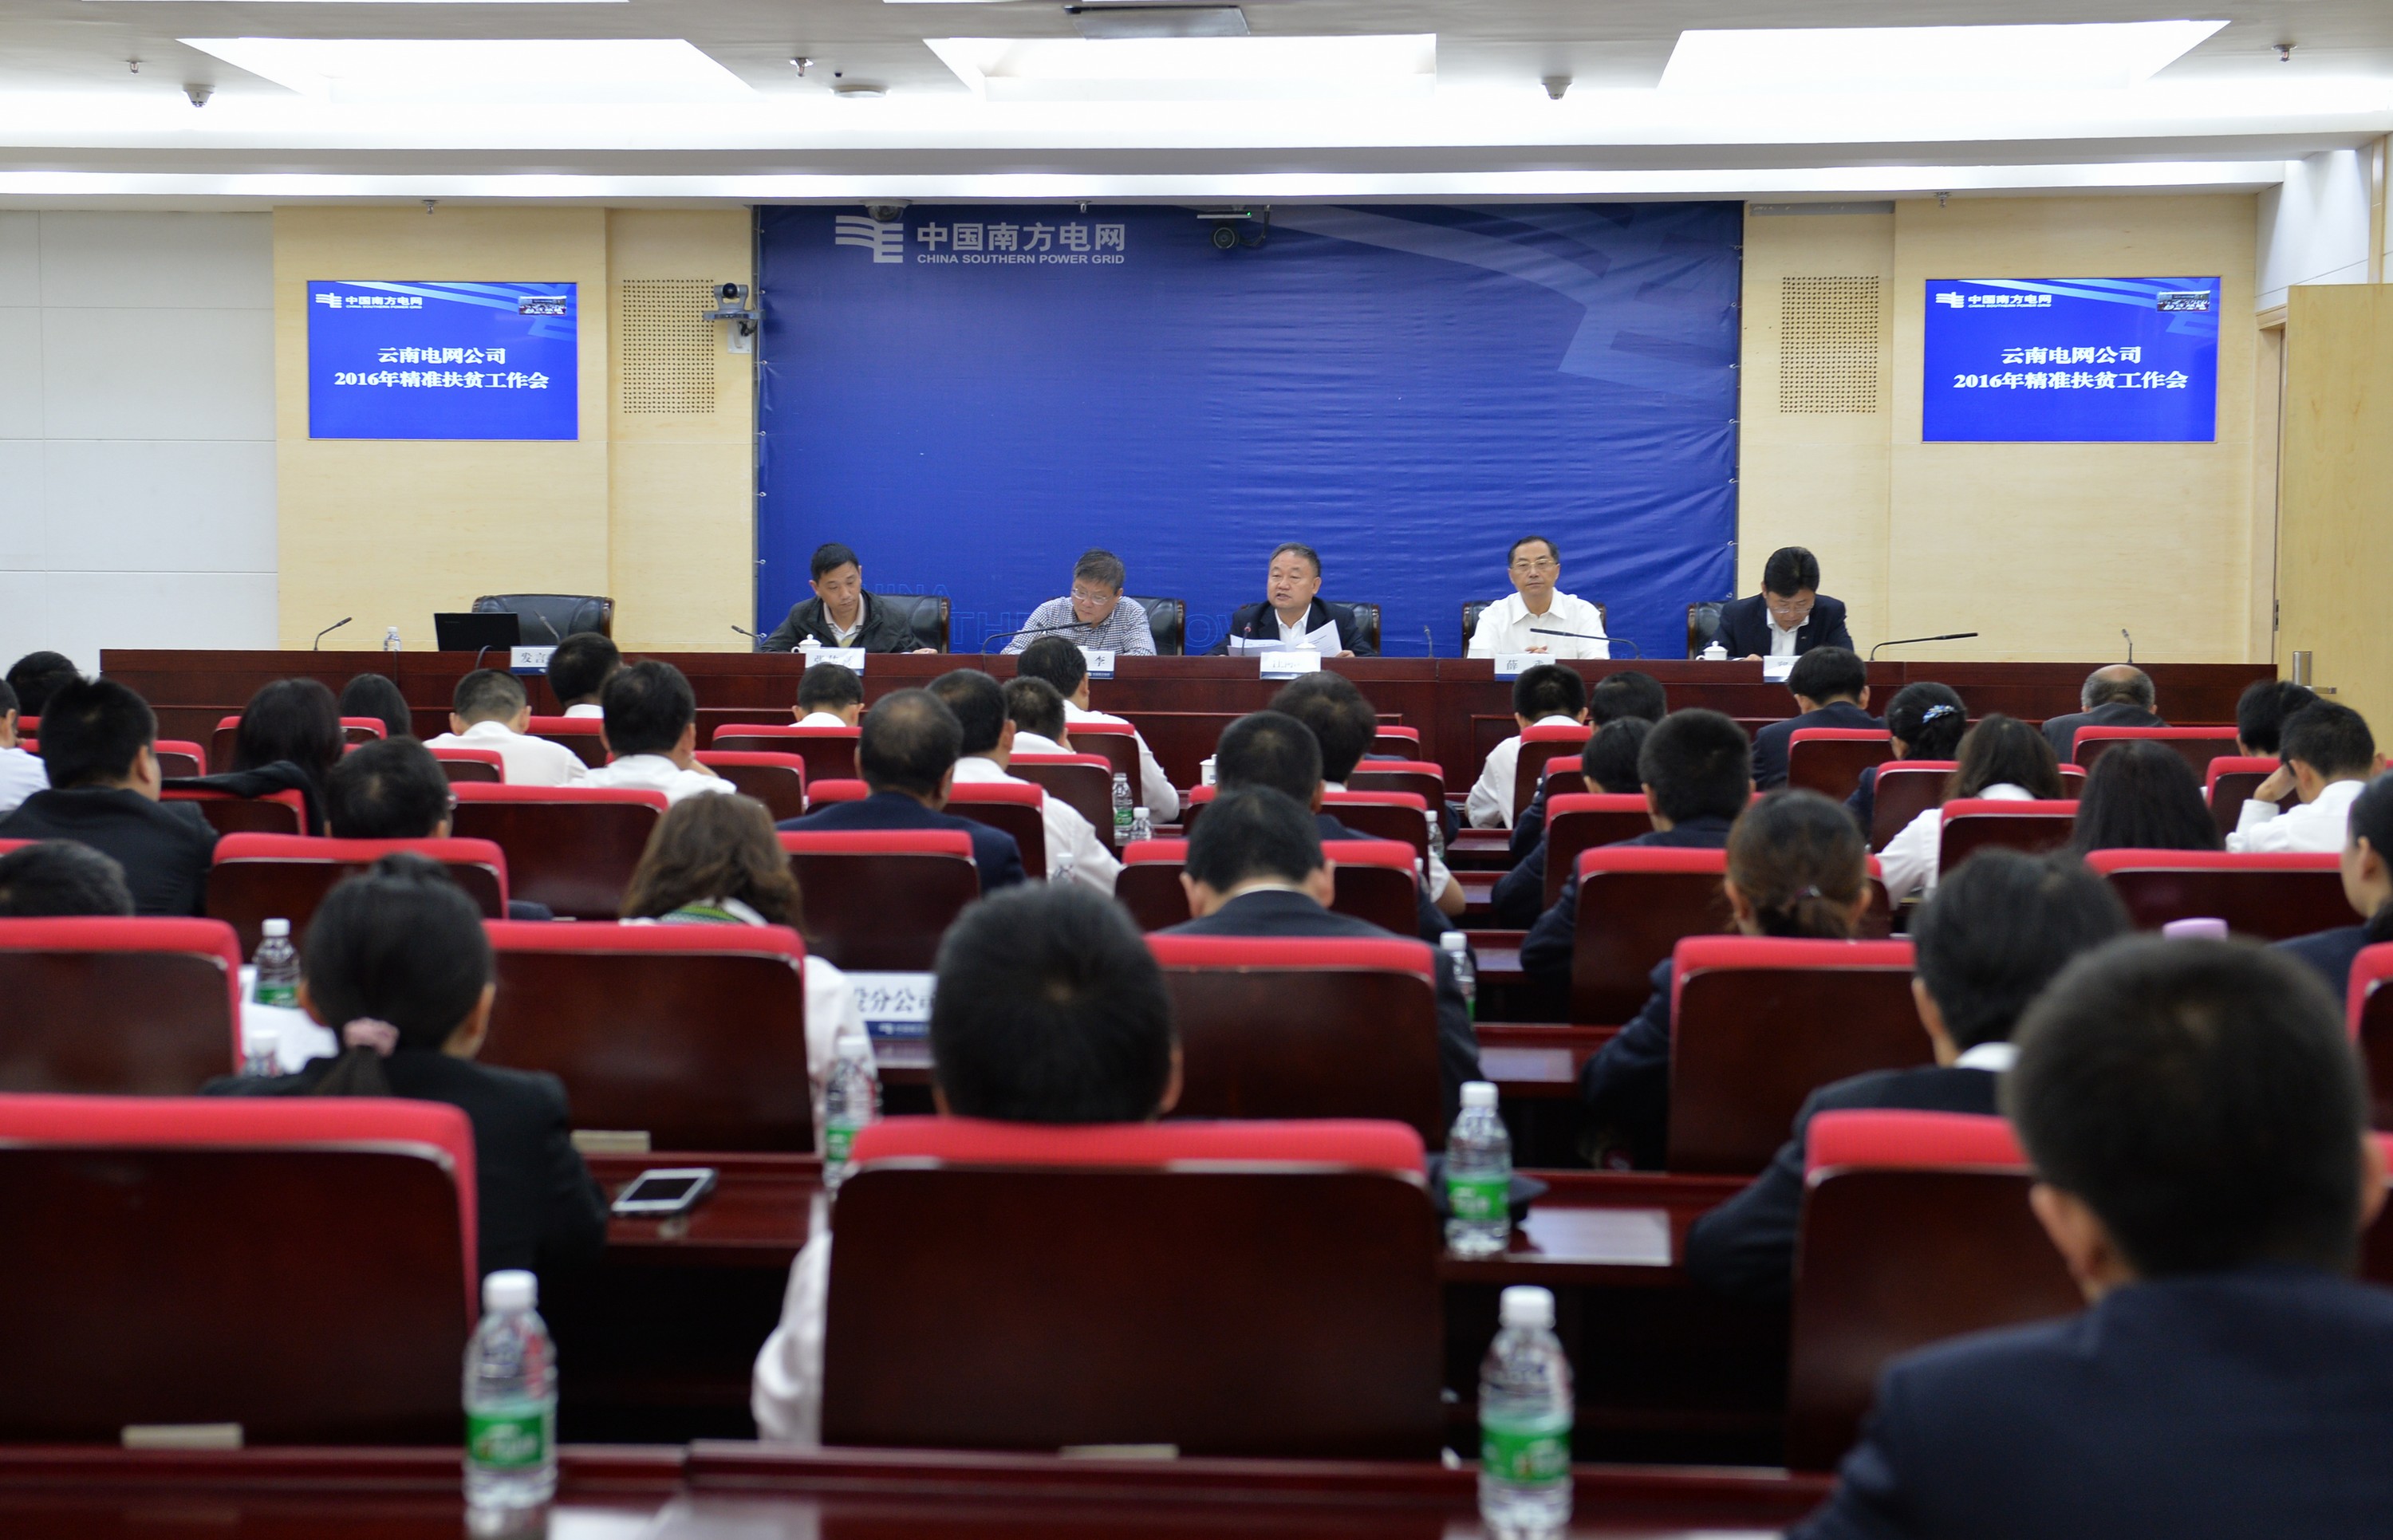 2019年云南电BOB力行业电力安全生产形势继续保持平稳部署202